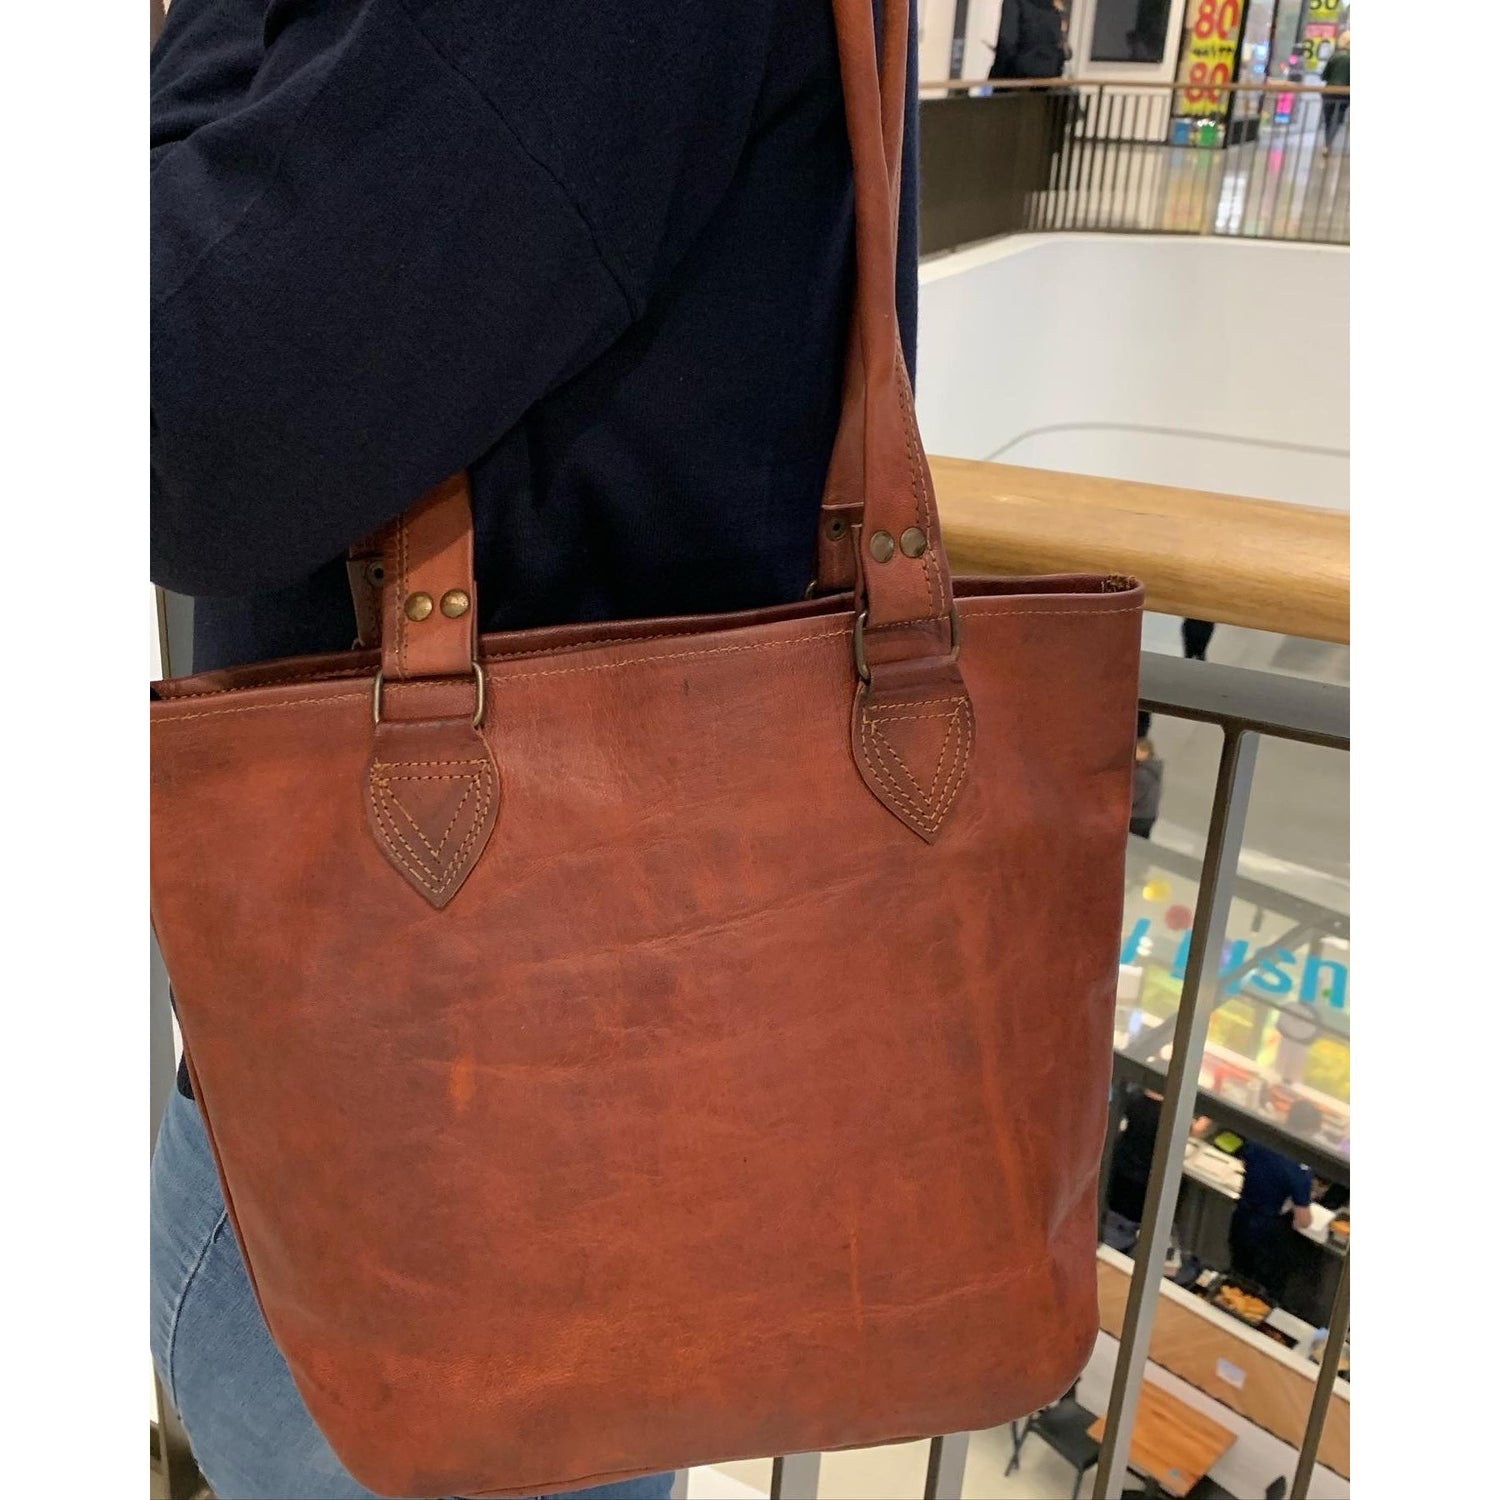 Leather Bucket Bag tote plain. (No outside pocket)